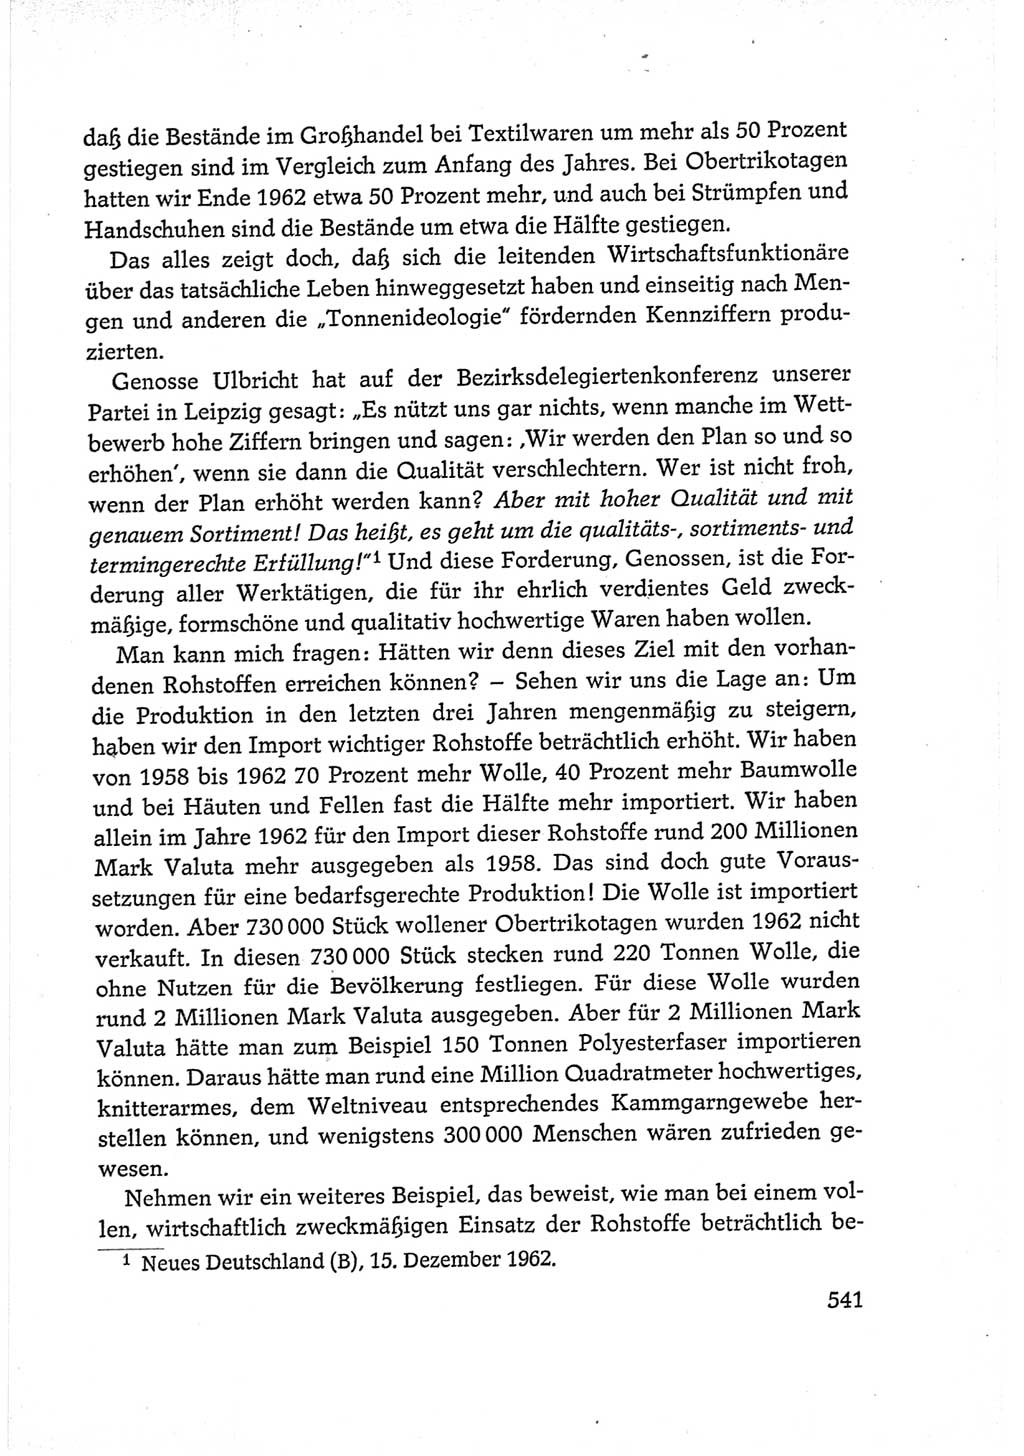 Protokoll der Verhandlungen des Ⅵ. Parteitages der Sozialistischen Einheitspartei Deutschlands (SED) [Deutsche Demokratische Republik (DDR)] 1963, Band Ⅰ, Seite 541 (Prot. Verh. Ⅵ. PT SED DDR 1963, Bd. Ⅰ, S. 541)